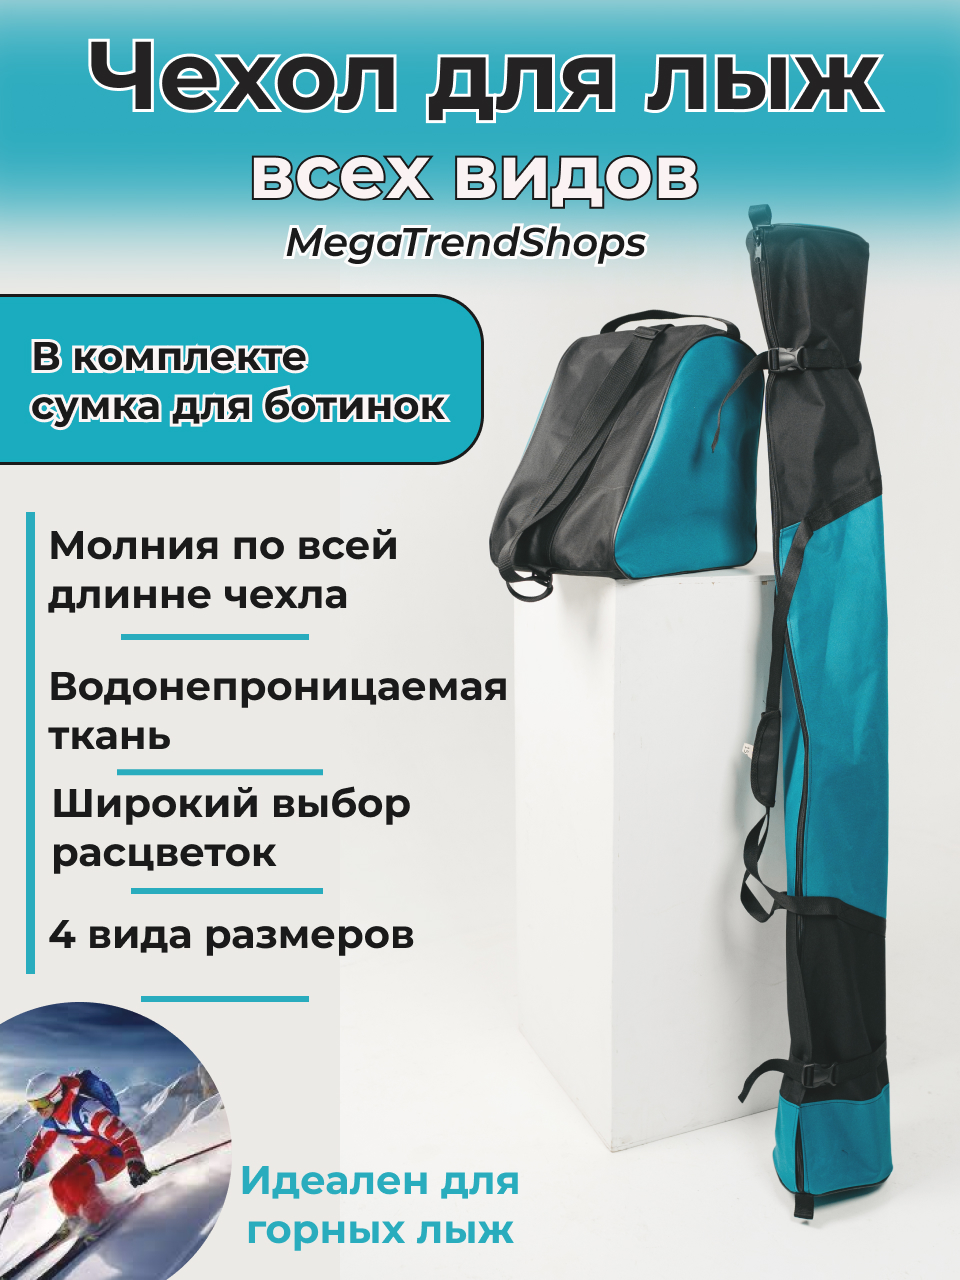 Чехол для лыж всех видов спортивный с сумкой для ботинок MegaTrendShops 155 см